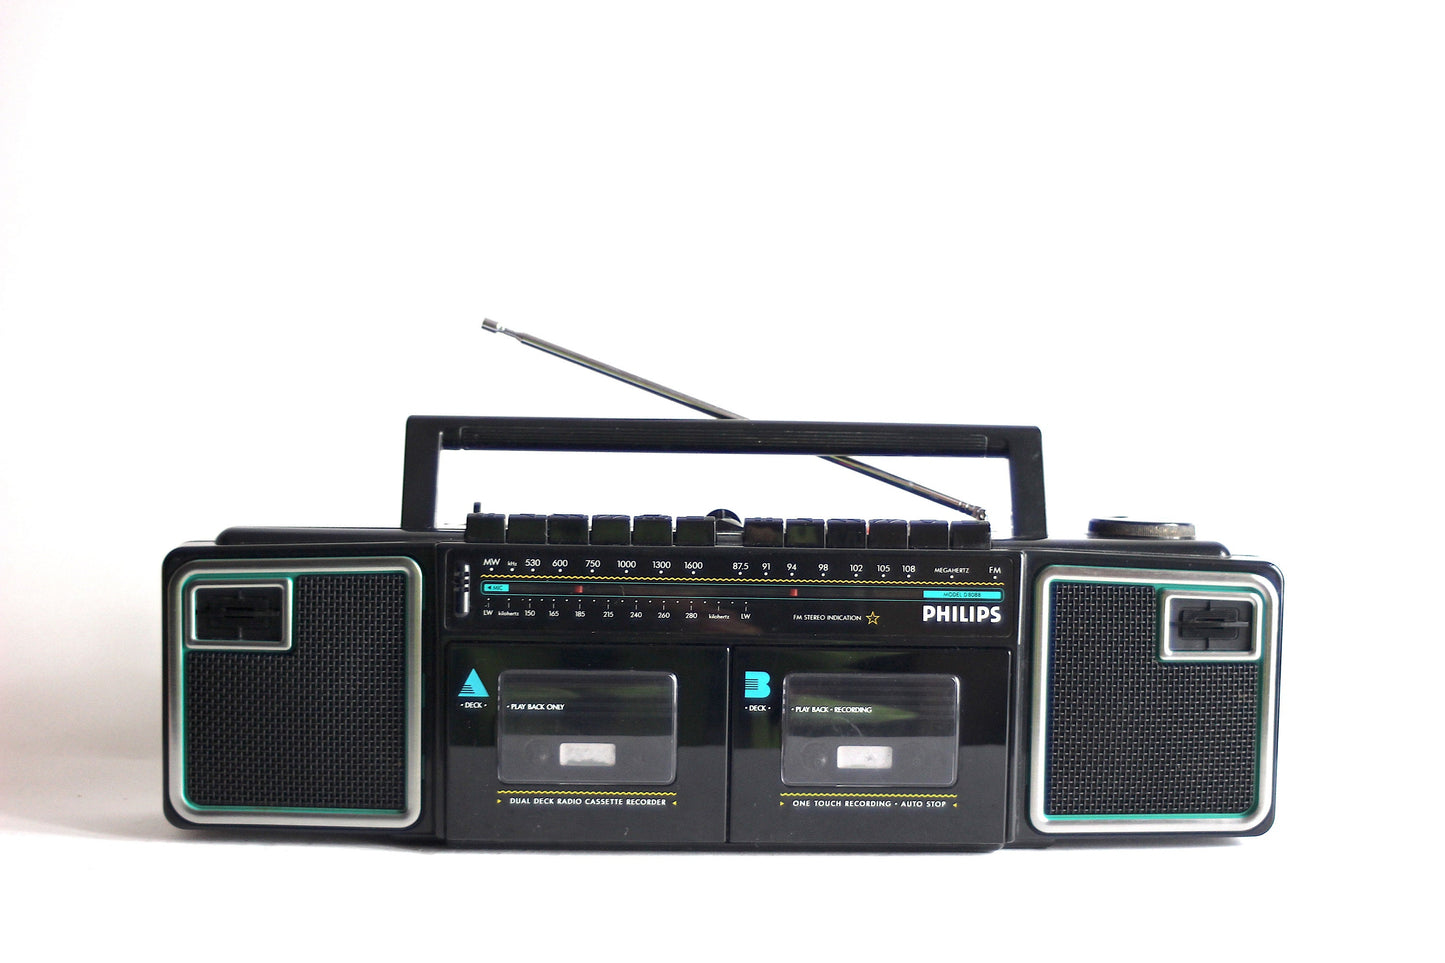 PHILIPS D8088 Stereo Radio double Cassette recorder  FM-AM. Memphis style. Austria 1987